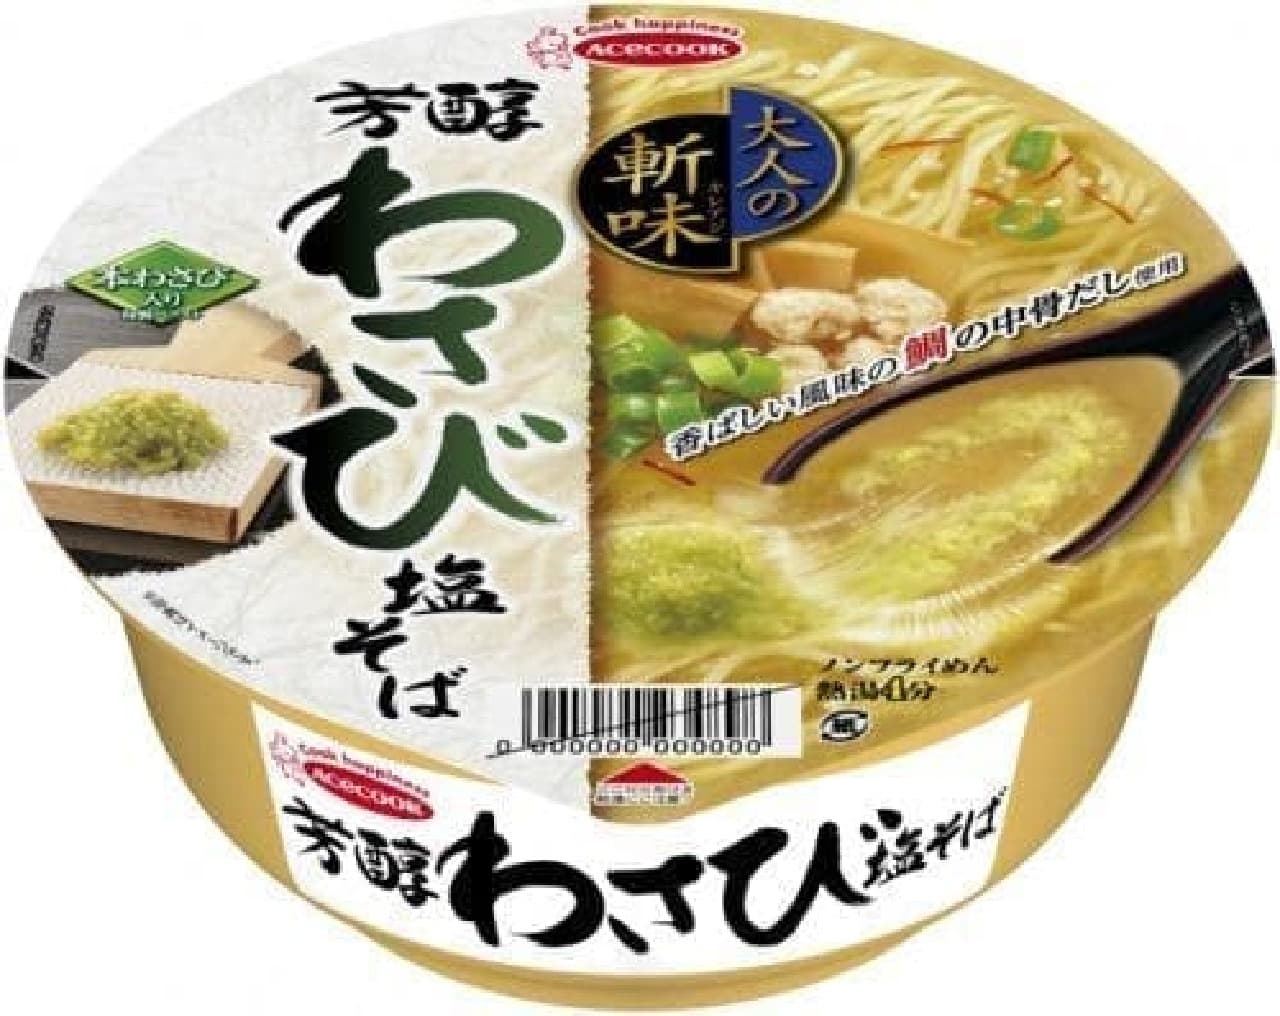 Acecook "Adult's sharpness mellow wasabi salt soba"